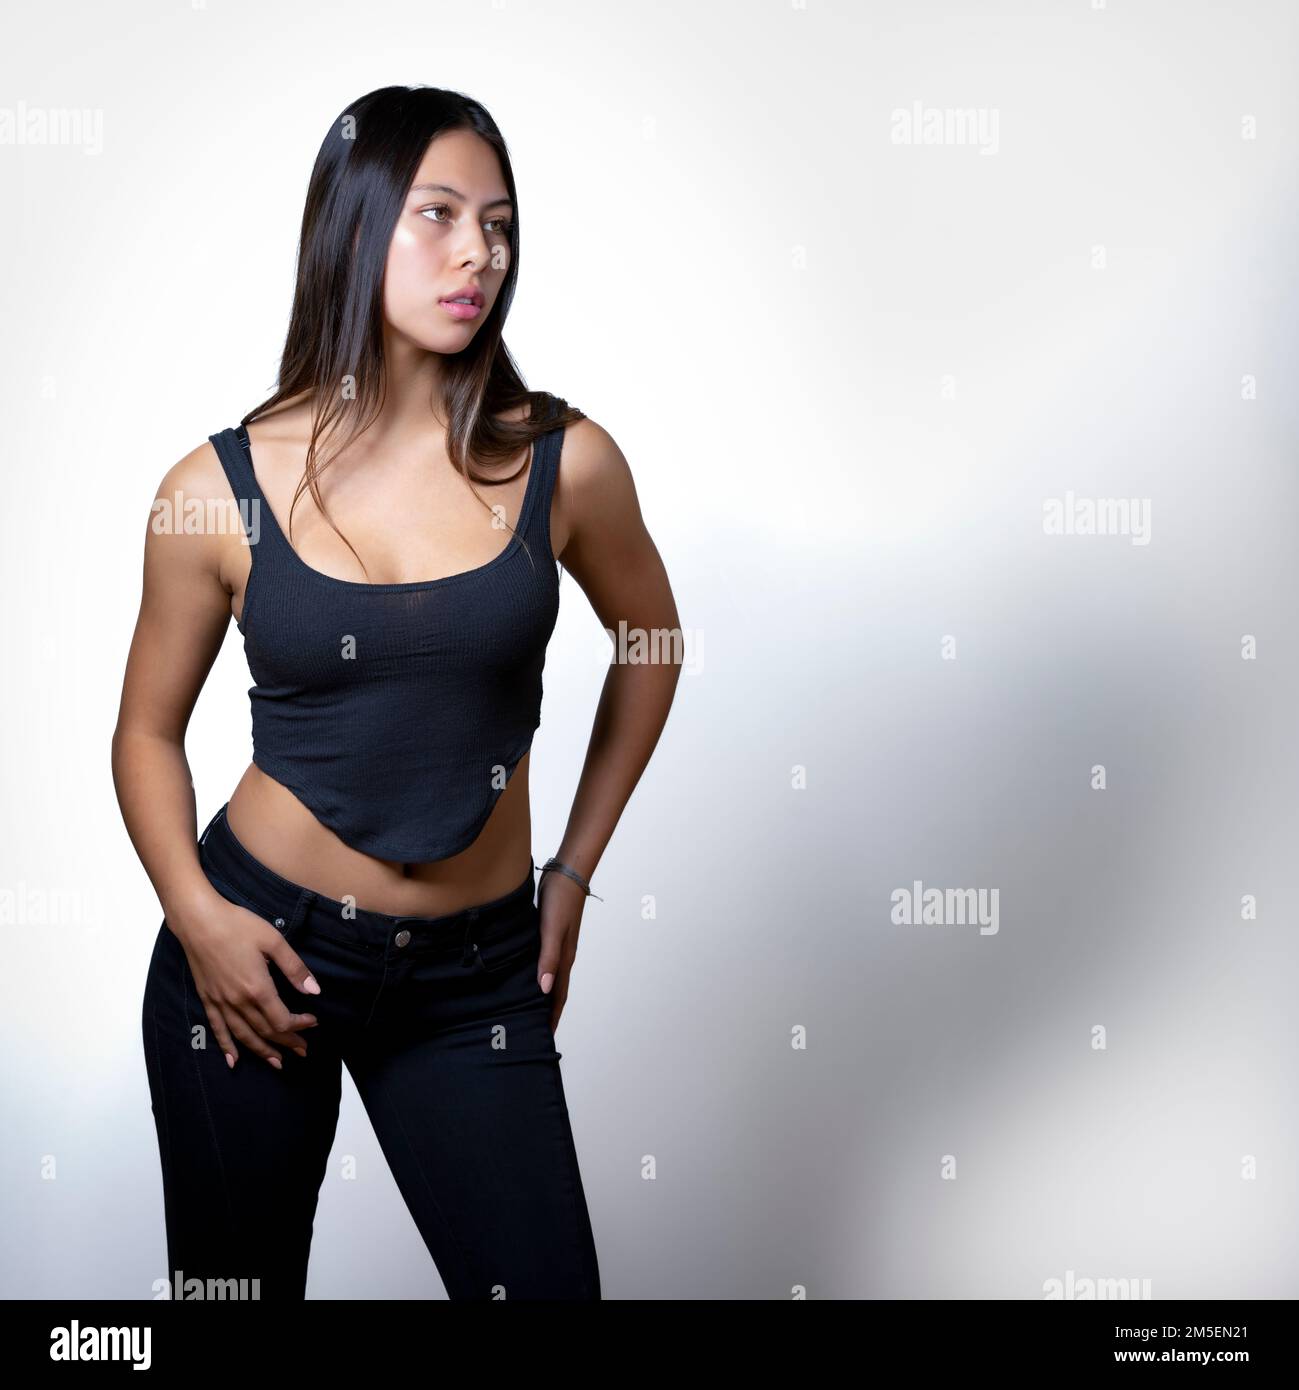 Teen féminine multiraciale edgy debout devant un arrière-plan blanc | espace de copie Banque D'Images